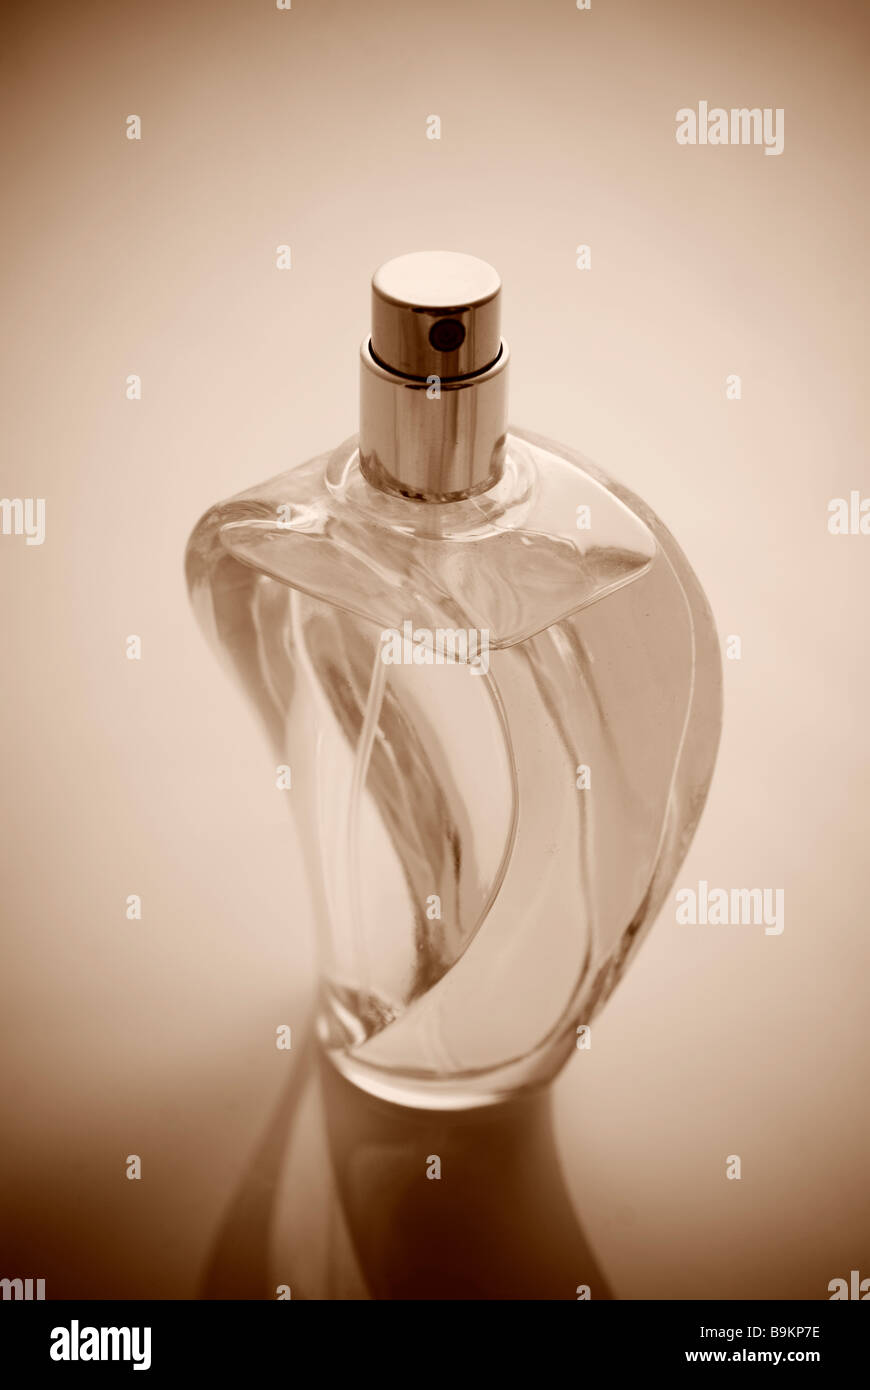 Flacon de parfum sépia Banque D'Images